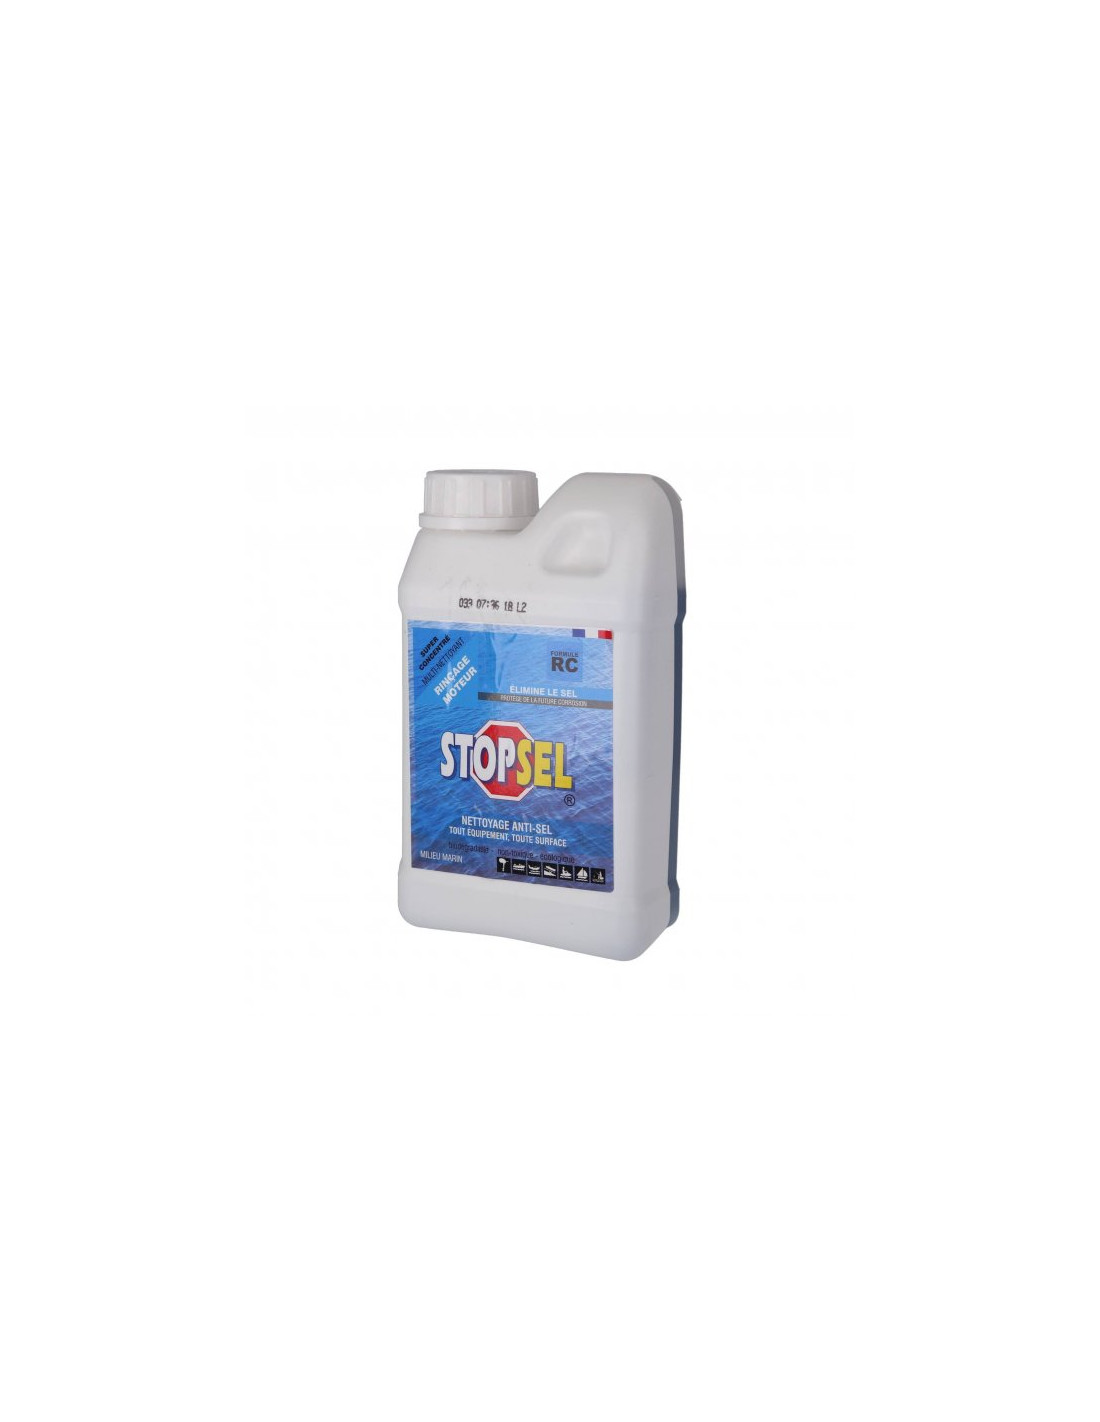 Stopsel nettoyant anti-sel : spray 500 ml, bidon 1 L, bidon 5 L